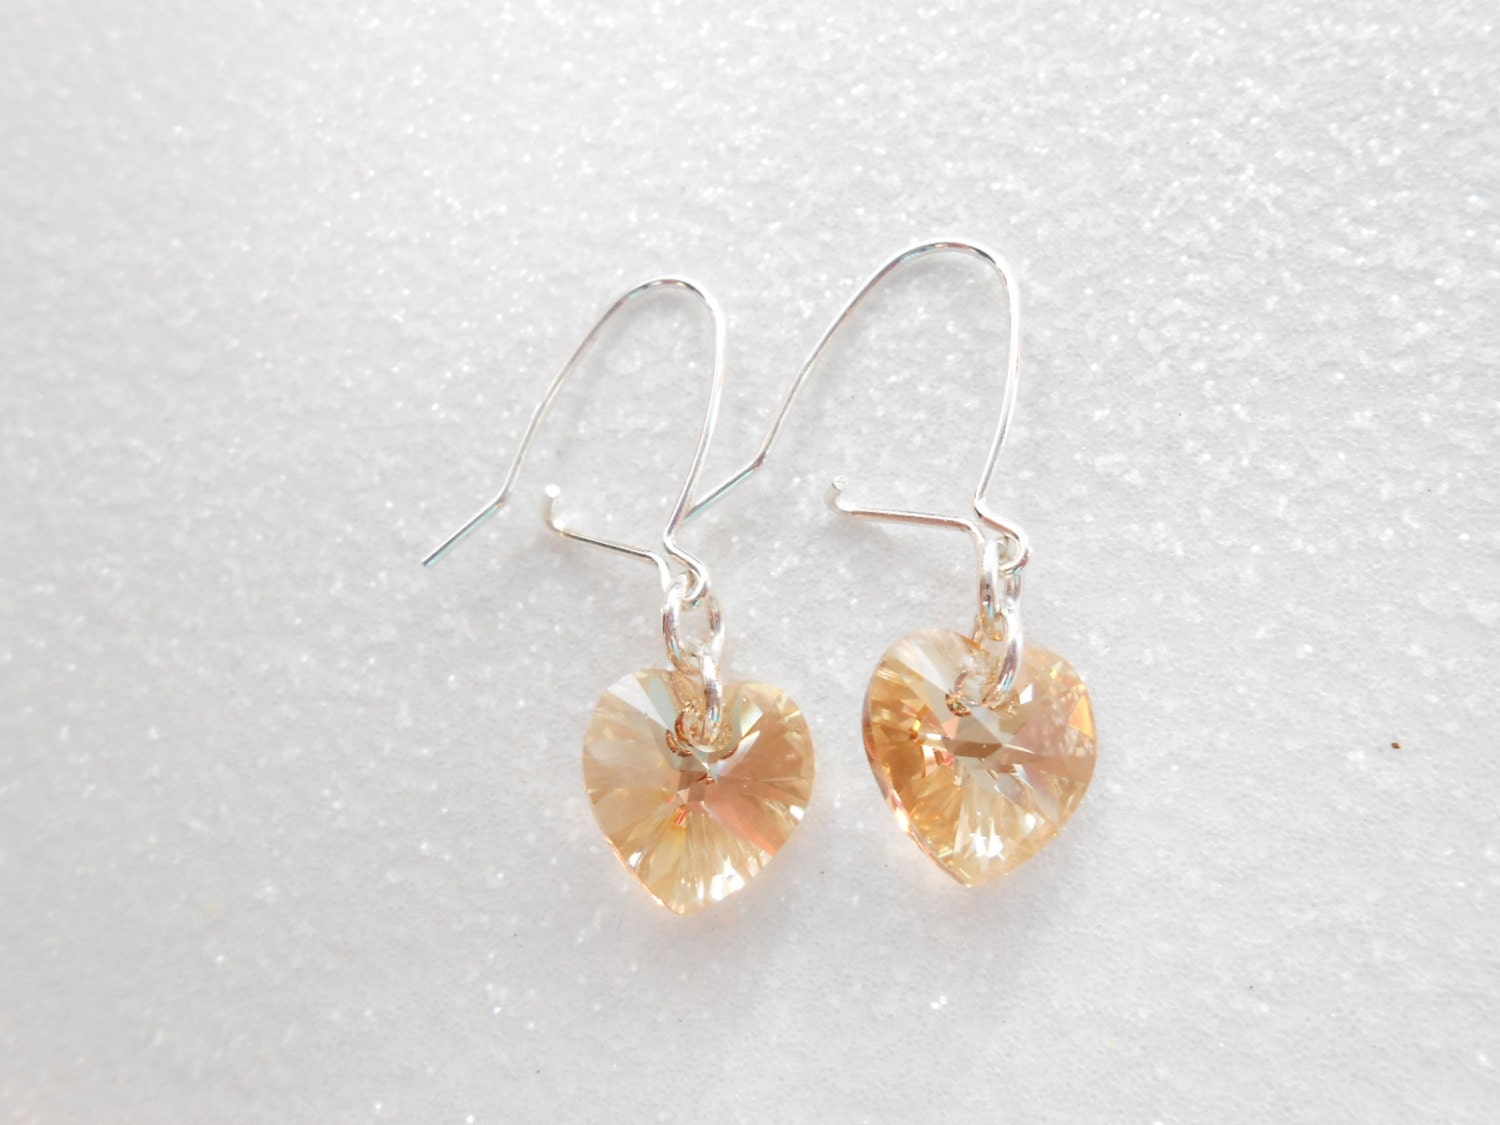 Swarovski Heart Earrings - Golden Shadow Dangle Sterling Silver Heart Earrings - Dazzling Crystal Heart Earrings - SkadiJewelry